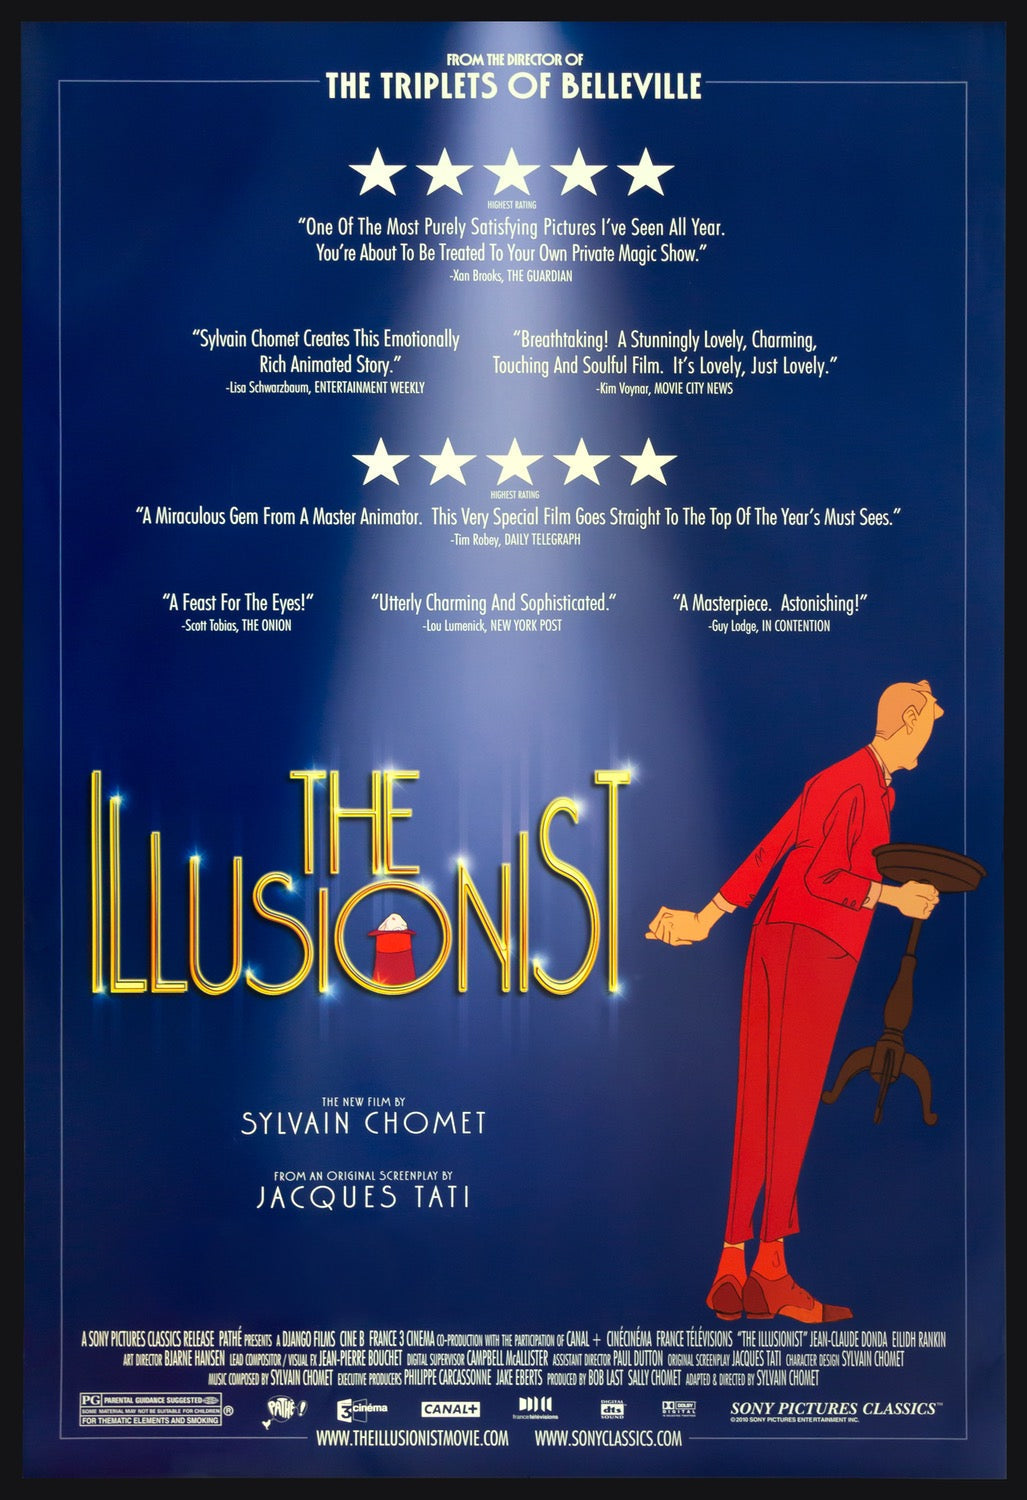 Illusionist (2010) original movie poster for sale at Original Film Art